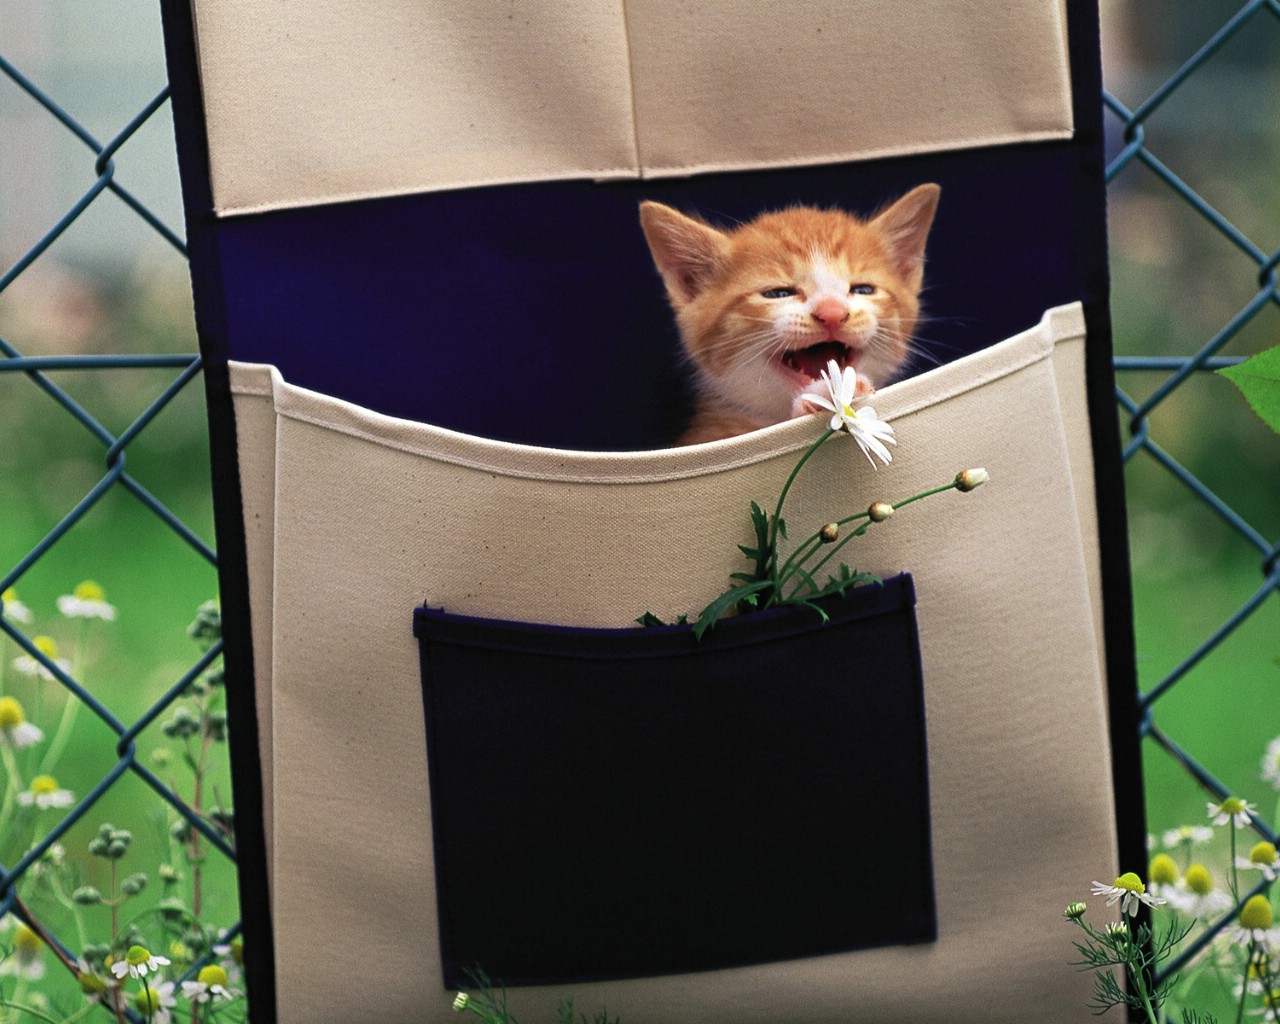 壁纸1280x1024 布袋里的小小黄猫咪图片壁纸壁纸 后院里的小猫咪壁纸 后院里的小猫咪图片 后院里的小猫咪素材 动物壁纸 动物图库 动物图片素材桌面壁纸